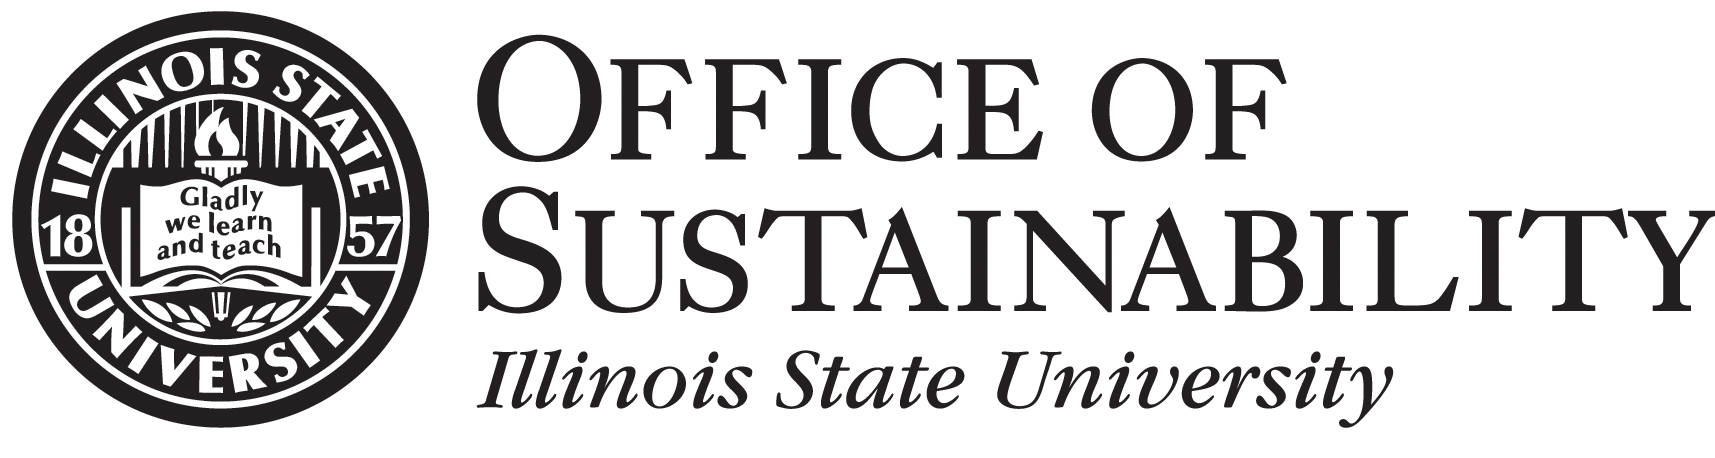 Office of Sustainability Illinois State University Logo